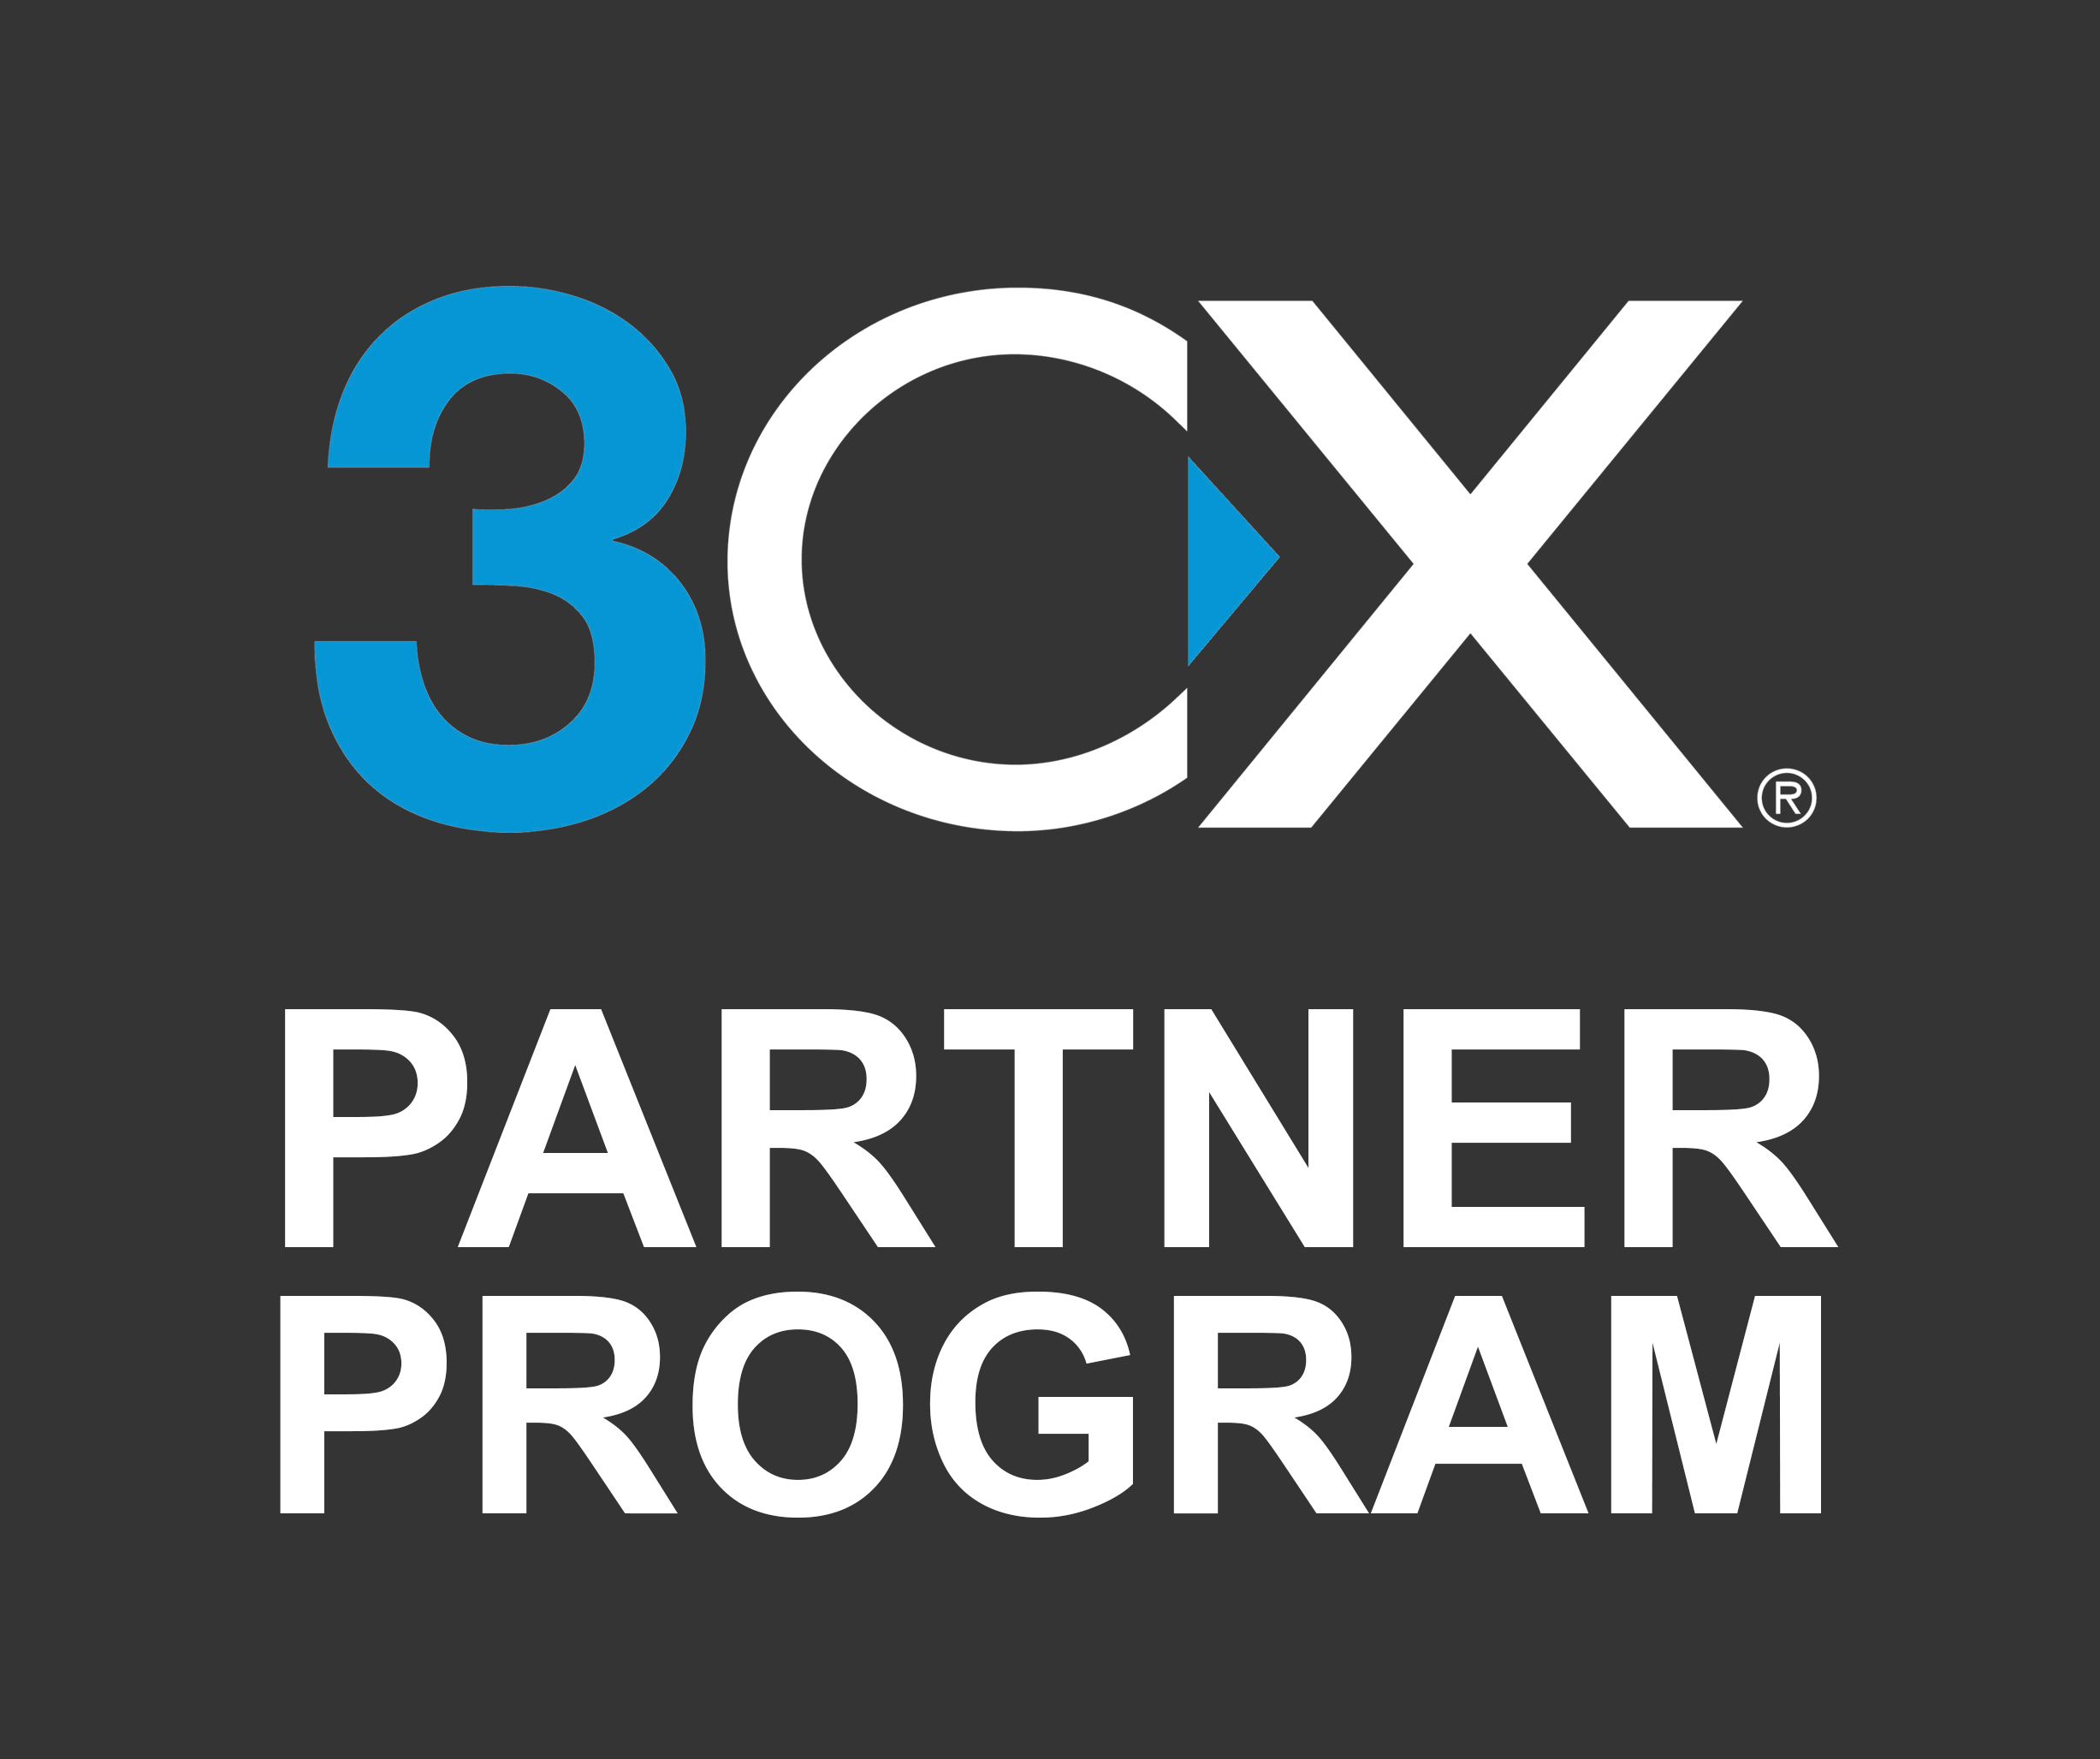 3CX-Partner-Program